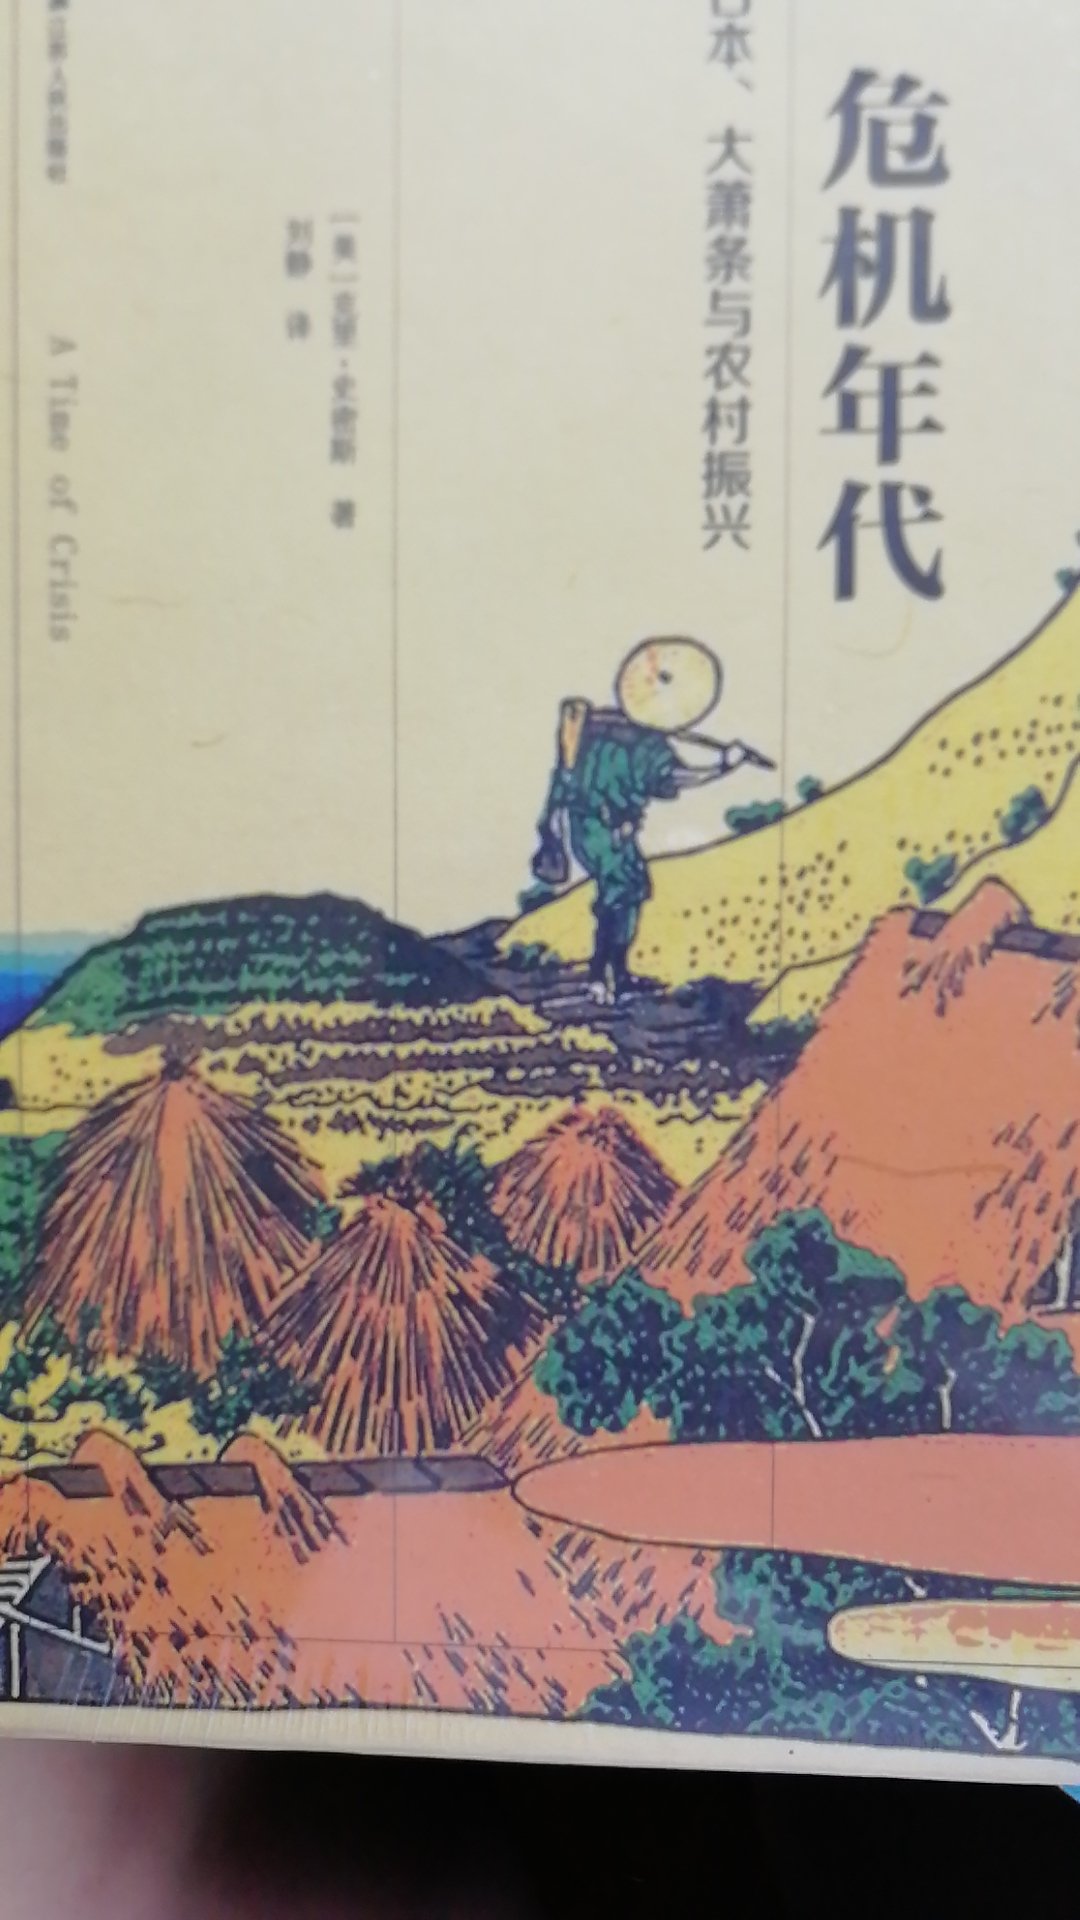 克里·史密斯的《危机年代》一书对日本大萧条时代农业振兴运动研究卓越。